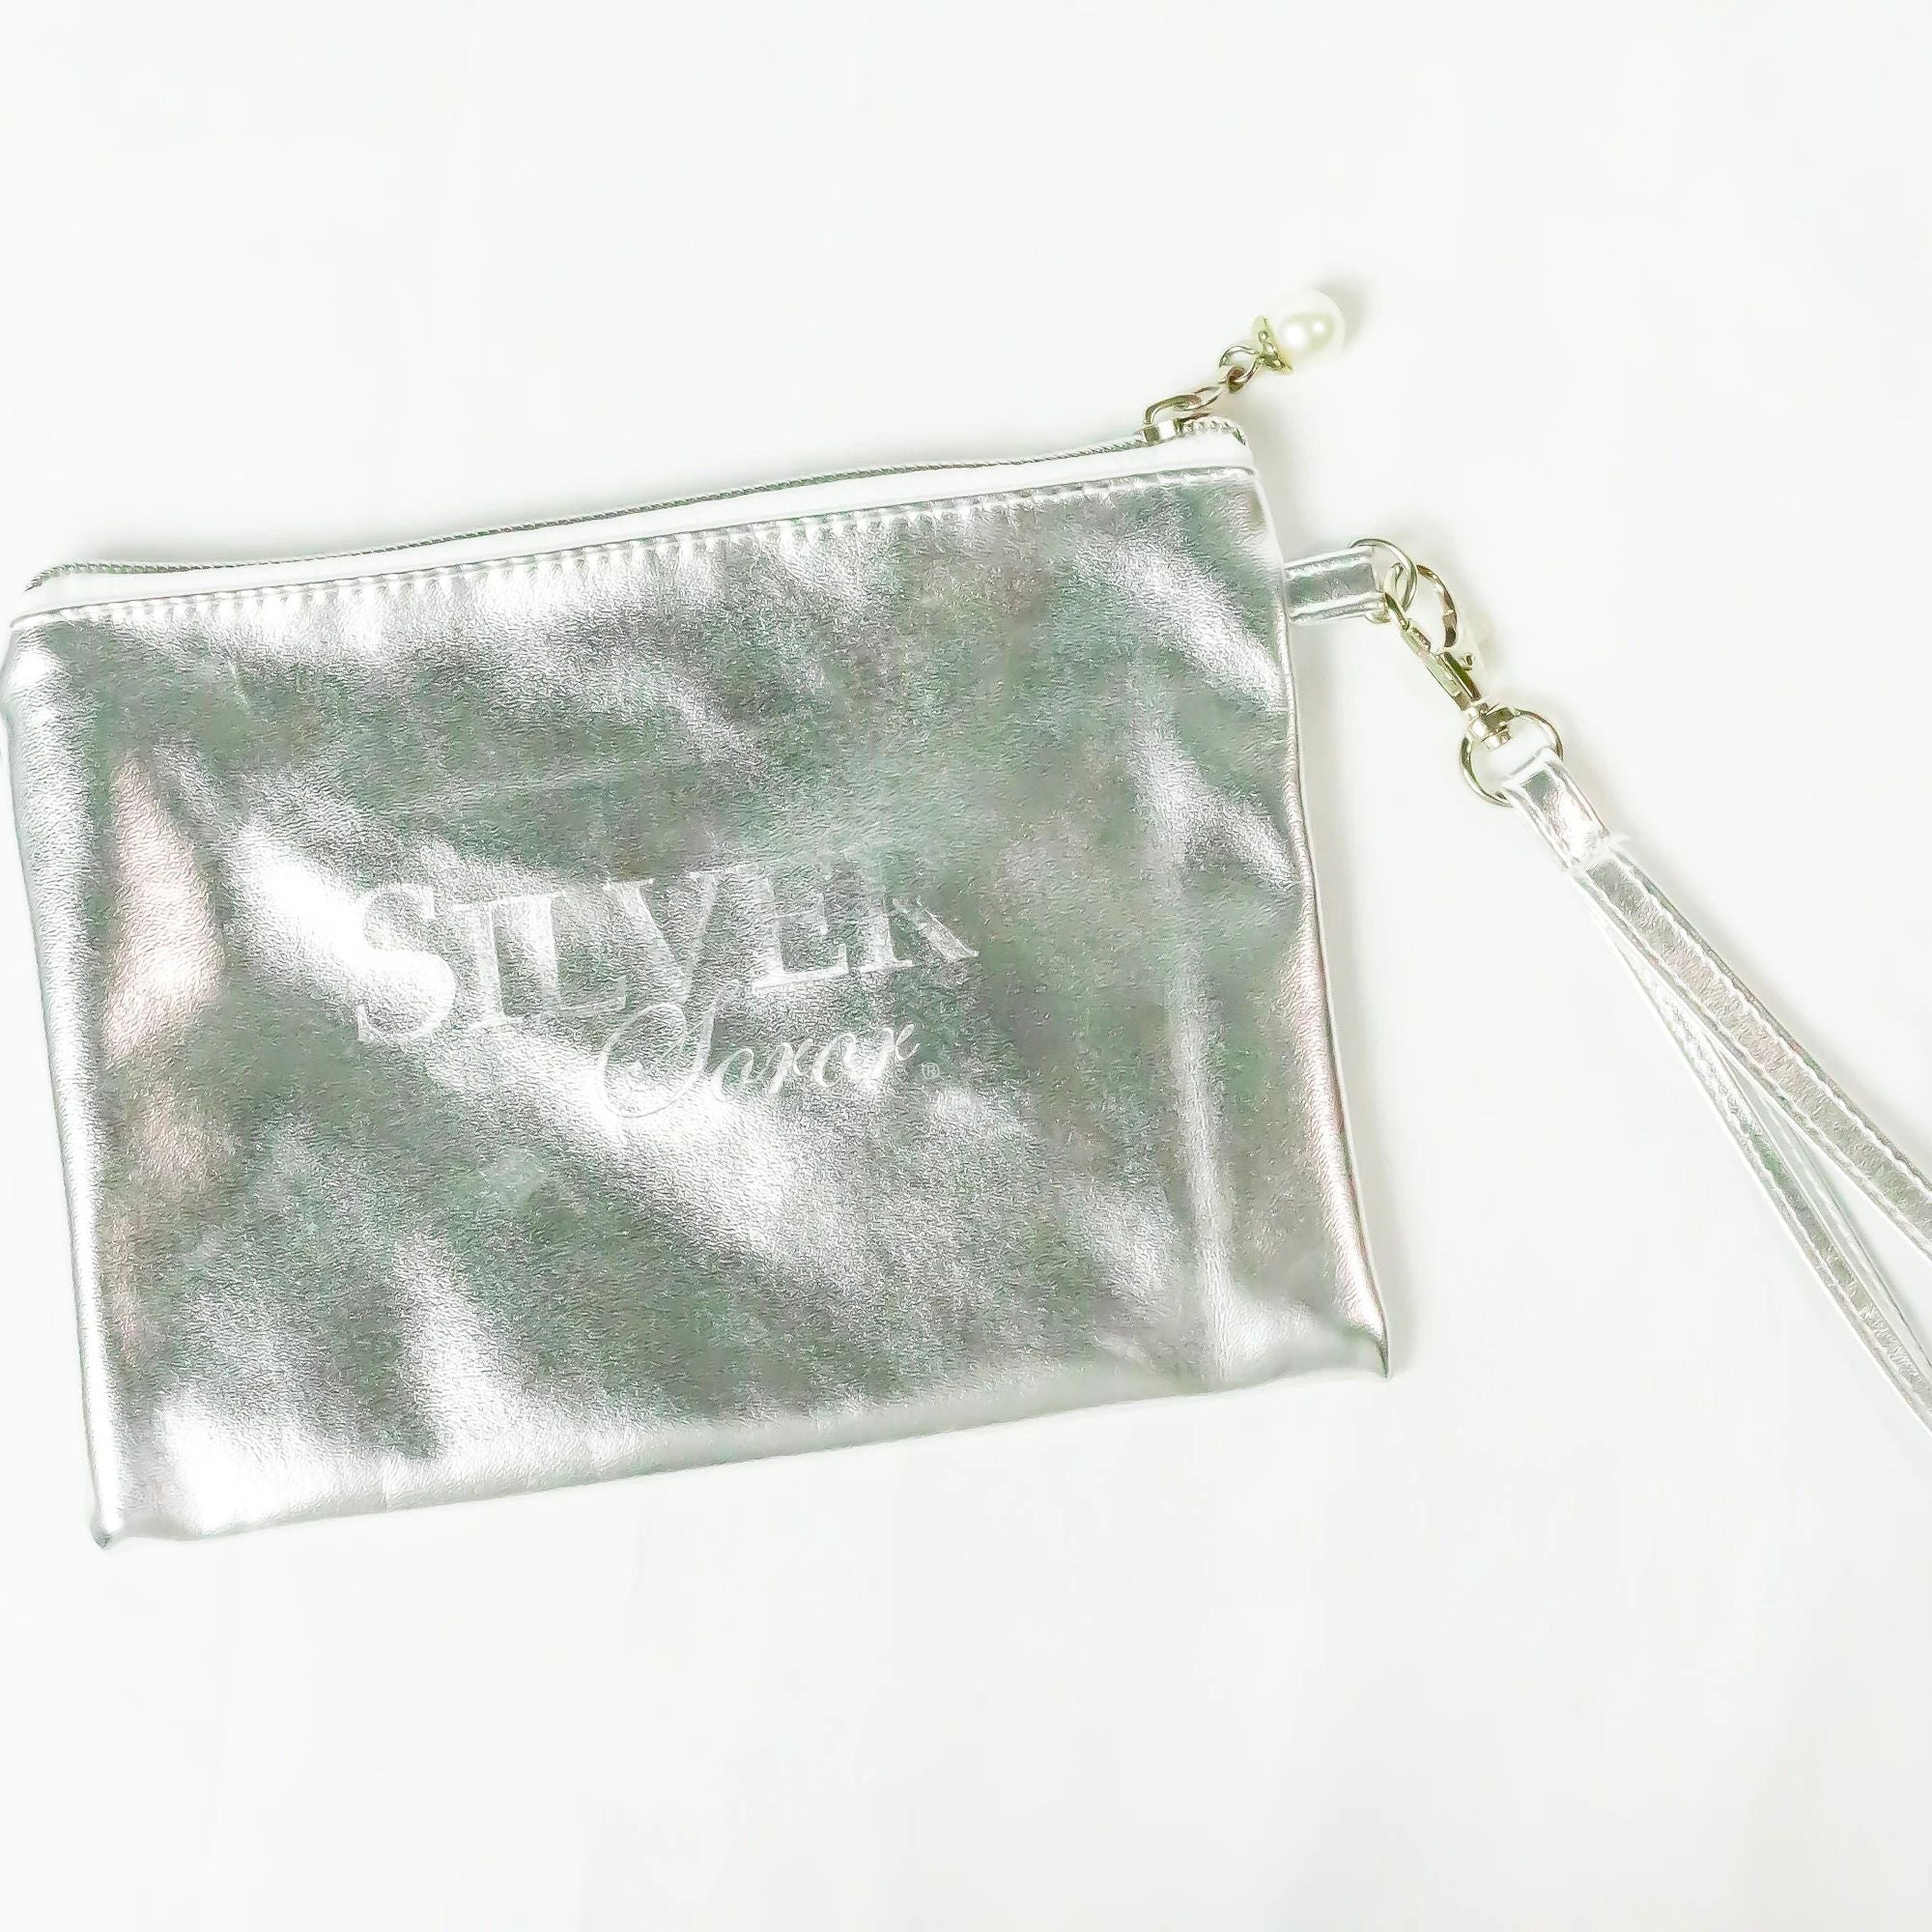 ELLE - women's small Dark Silver Metallic Wristlet Purse w/ Bow Accent,  Wallet | eBay